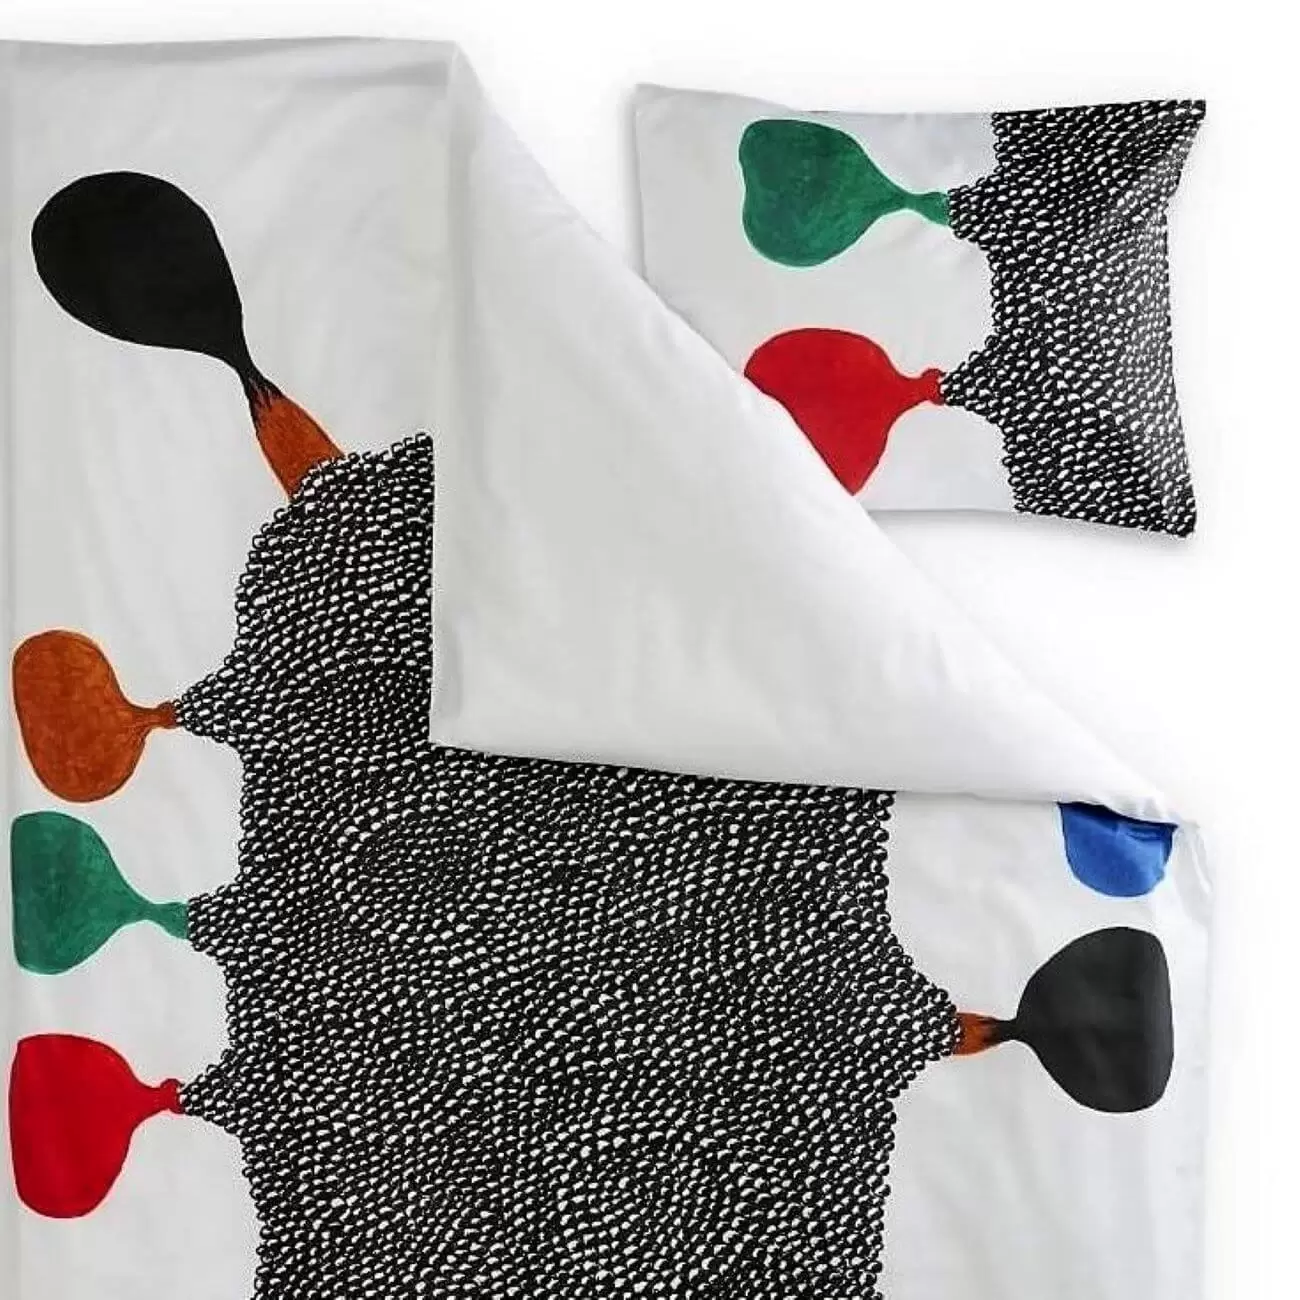 Pościel nowoczesna EMO. Fragment pościeli do sypialni z satyny bawełnianej z wyraźnie widoczną poszewką. Abstrakcyjny nieregularny wzór czarno biały składający się z drobnych elementów i kolorowe plamy na białym tle. Skandynawski design